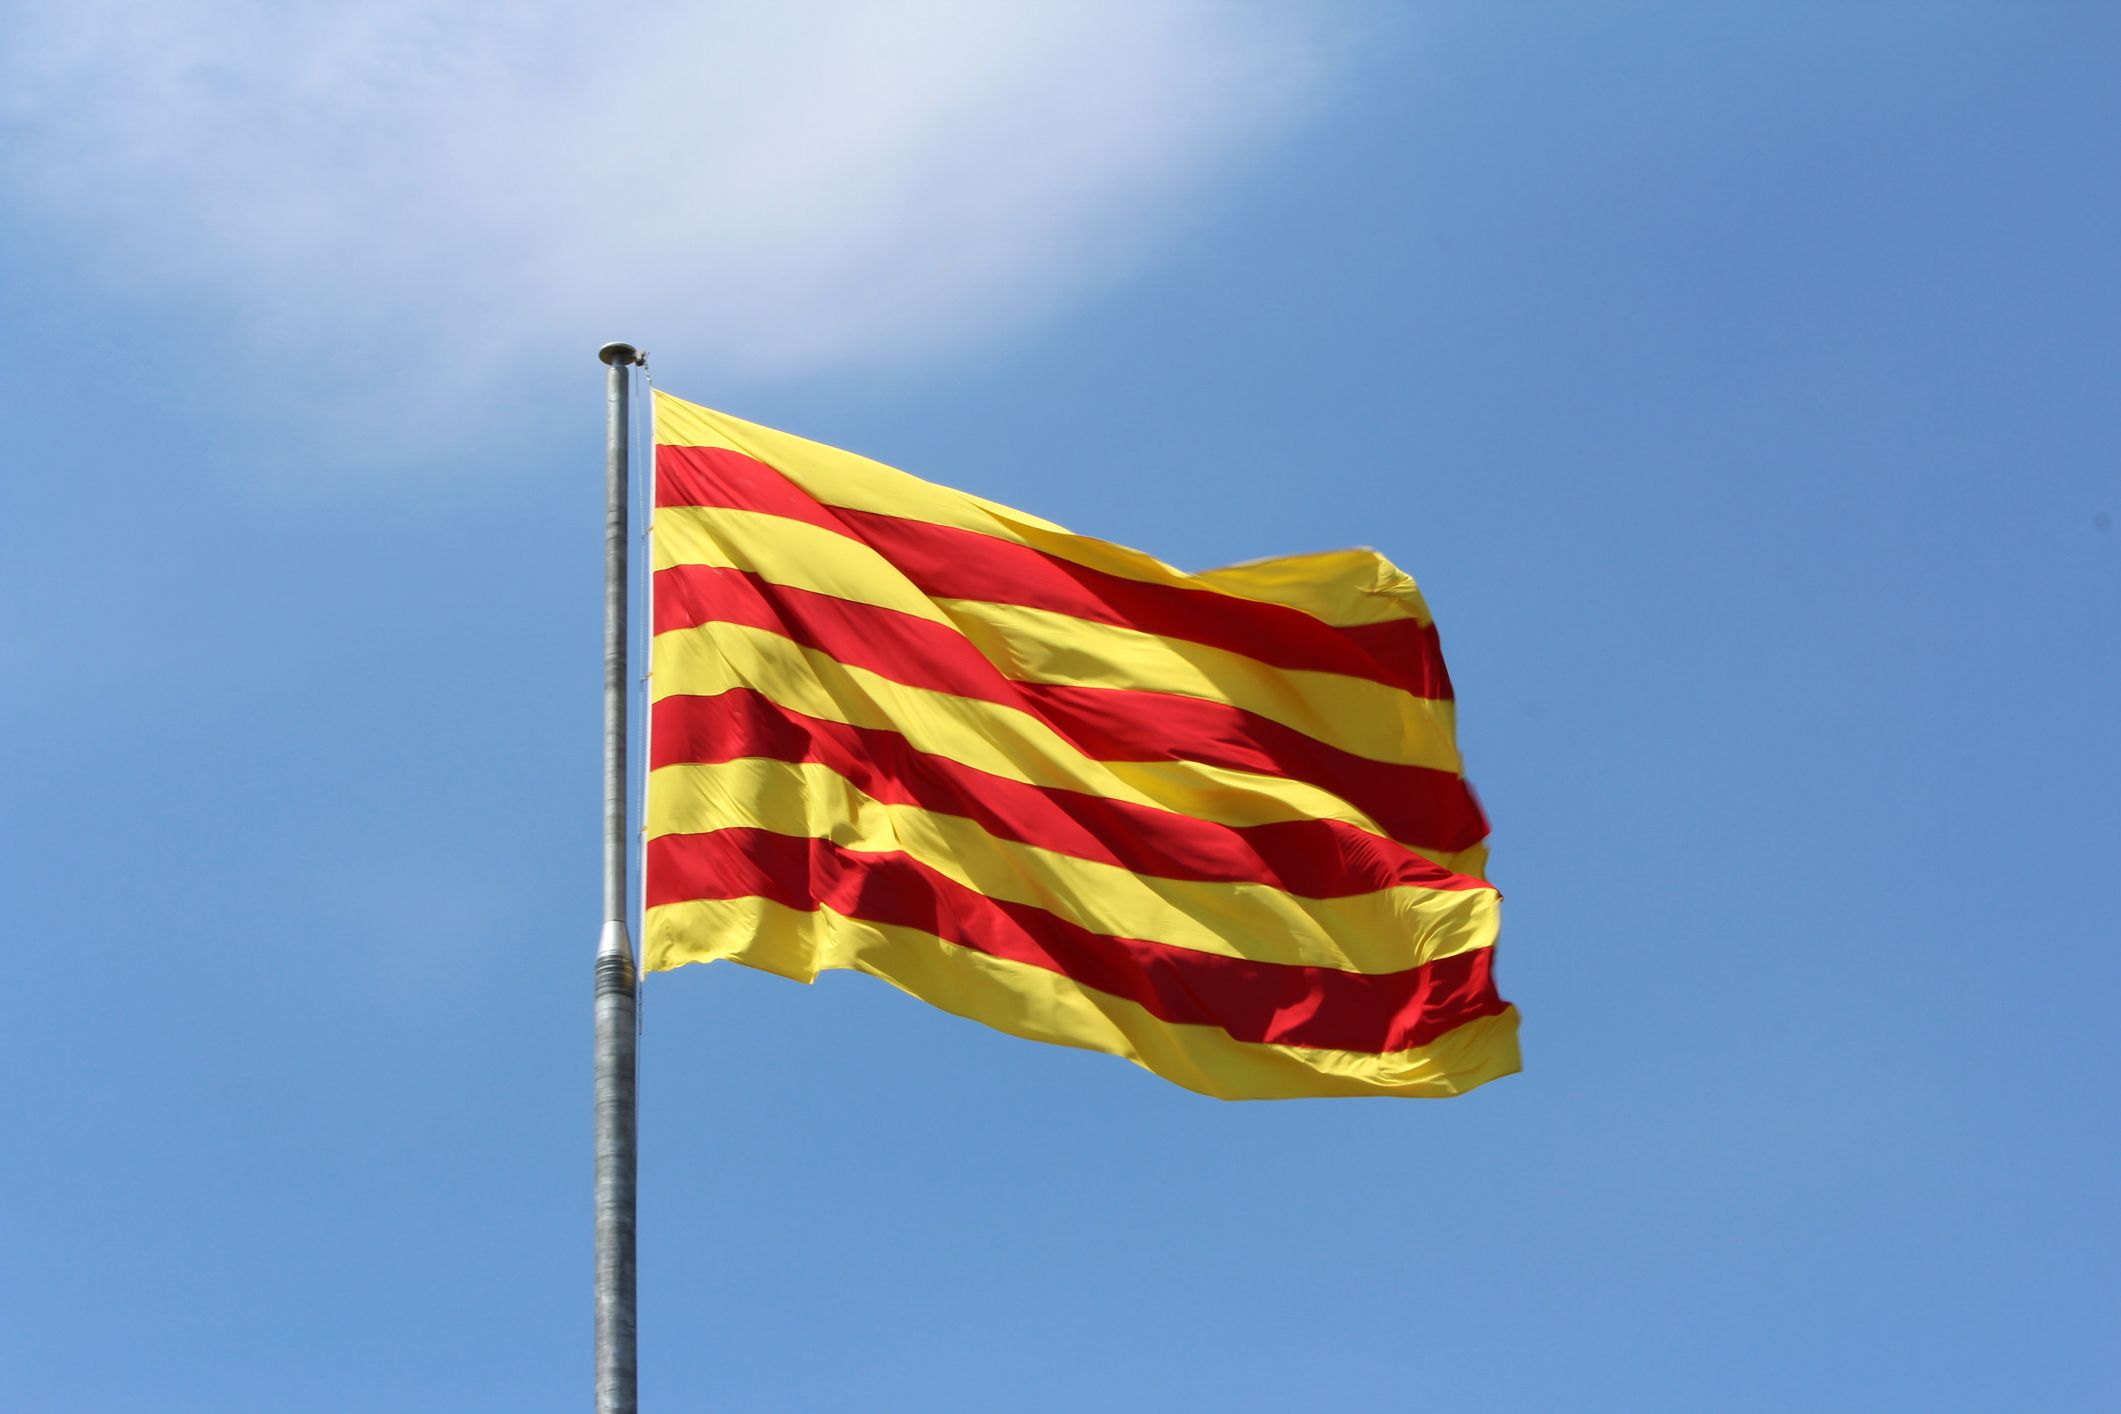 El catalán escala posiciones en el ranking mundial